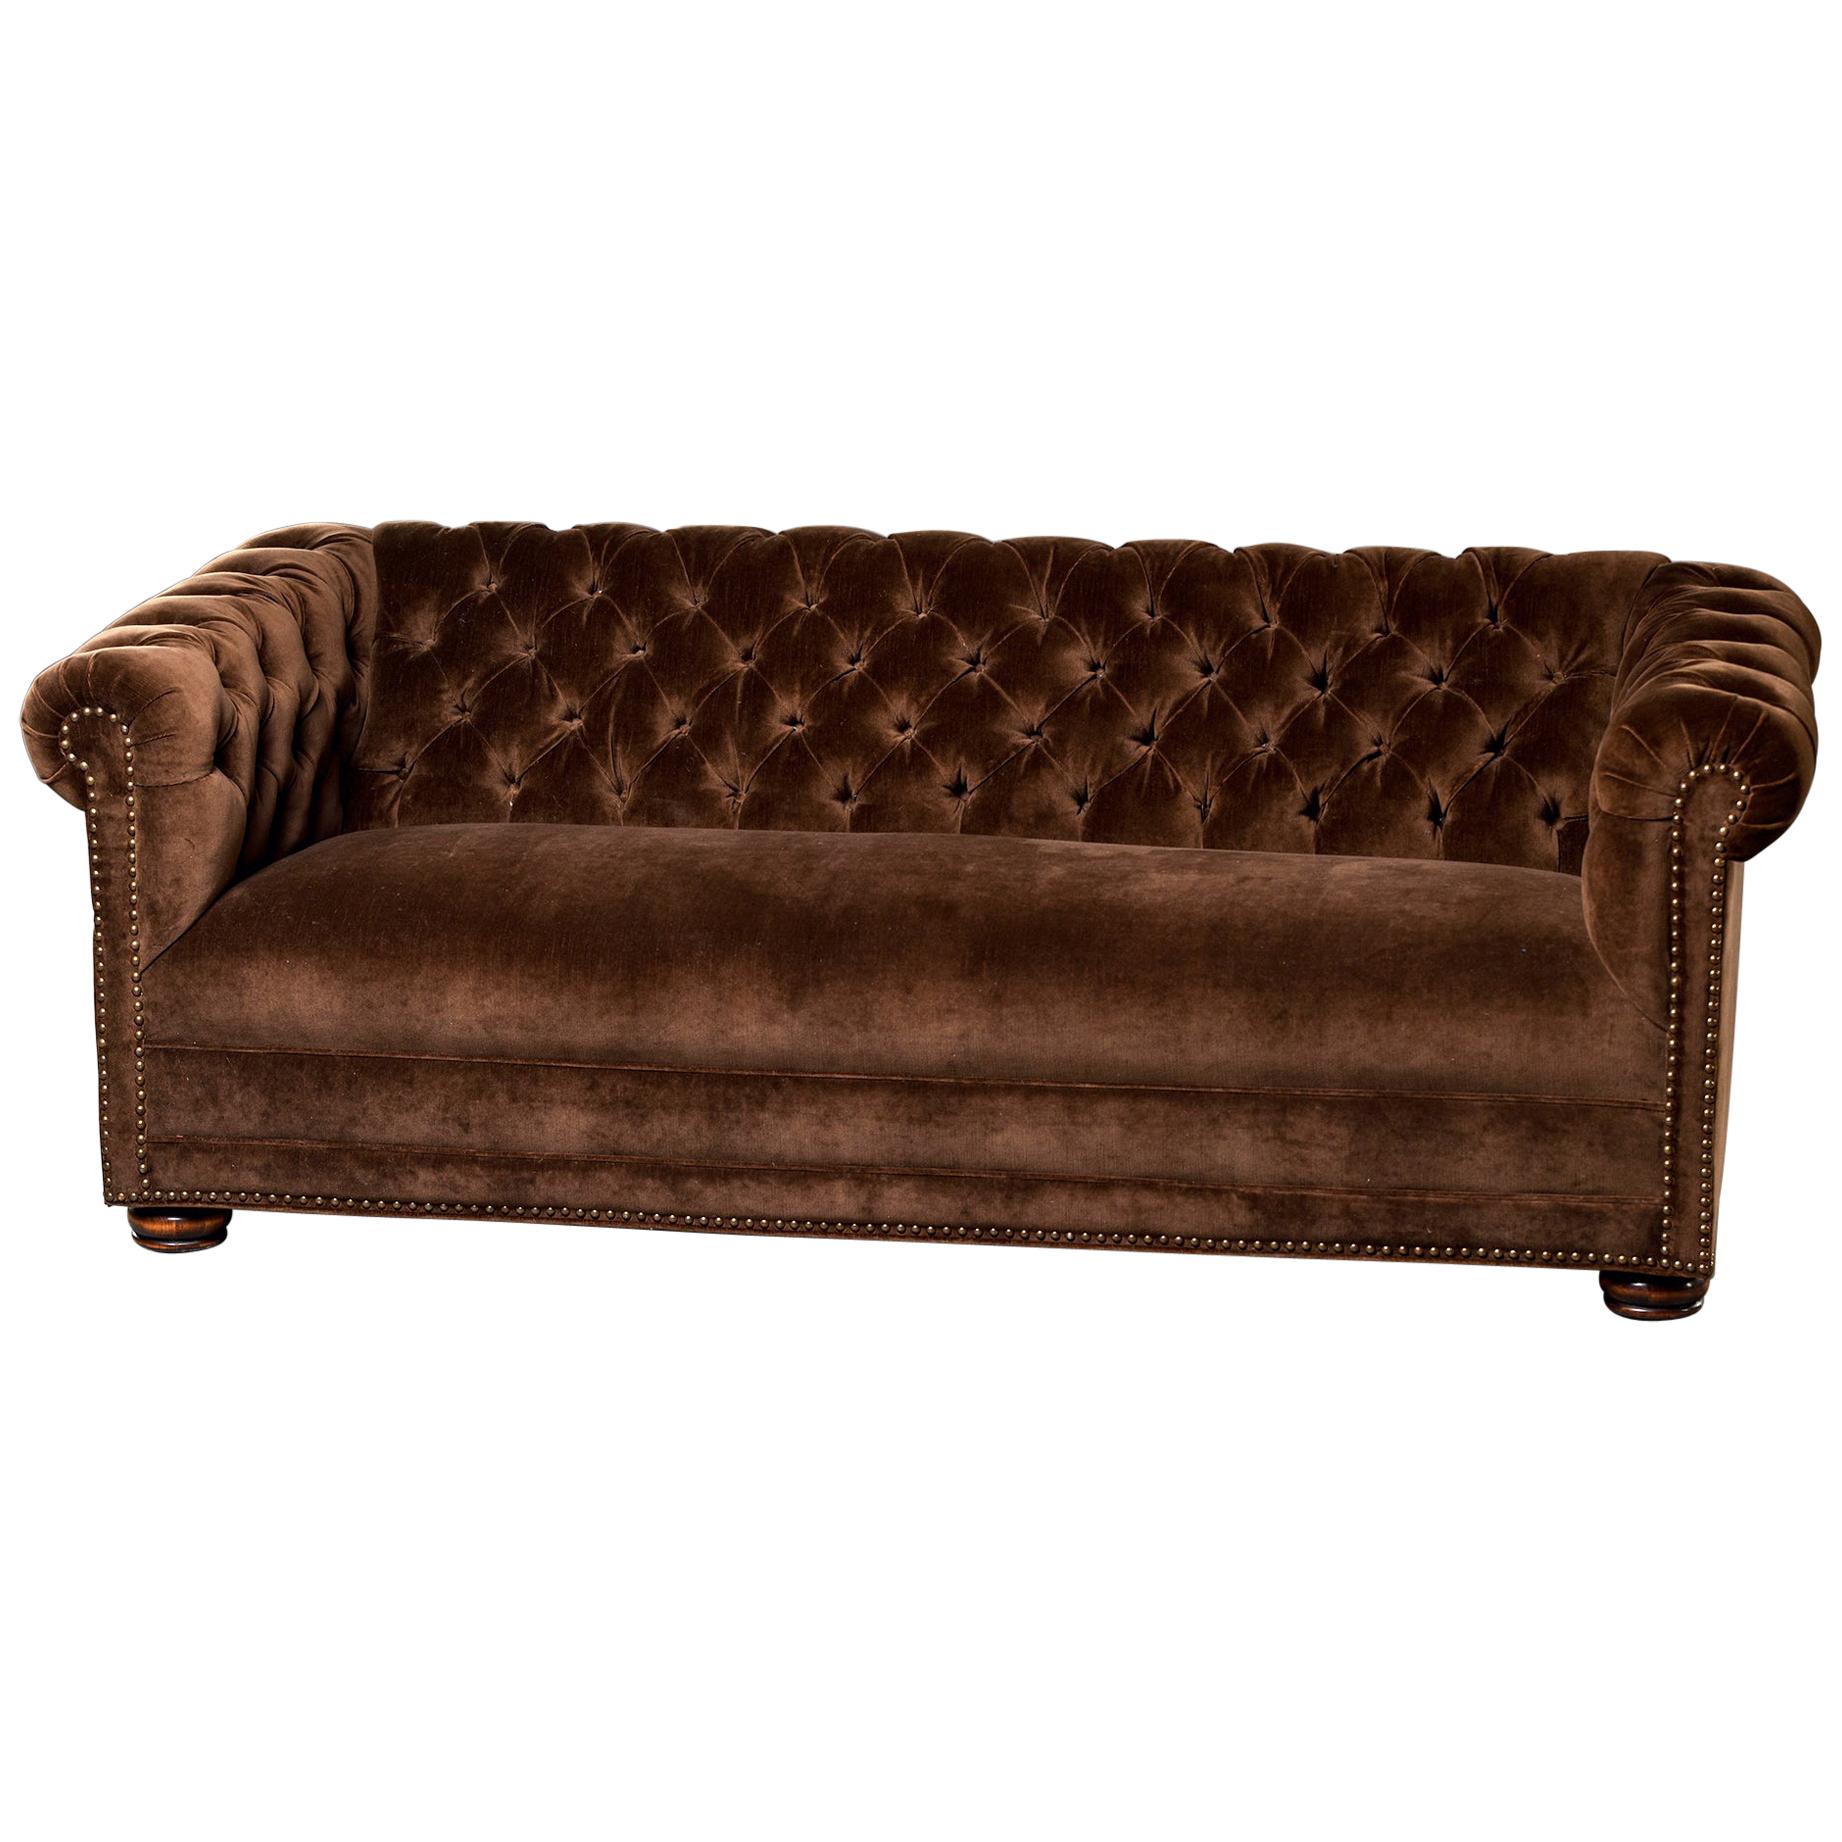 Midcentury Chesterfield Sofa with New Velvet Upholstery